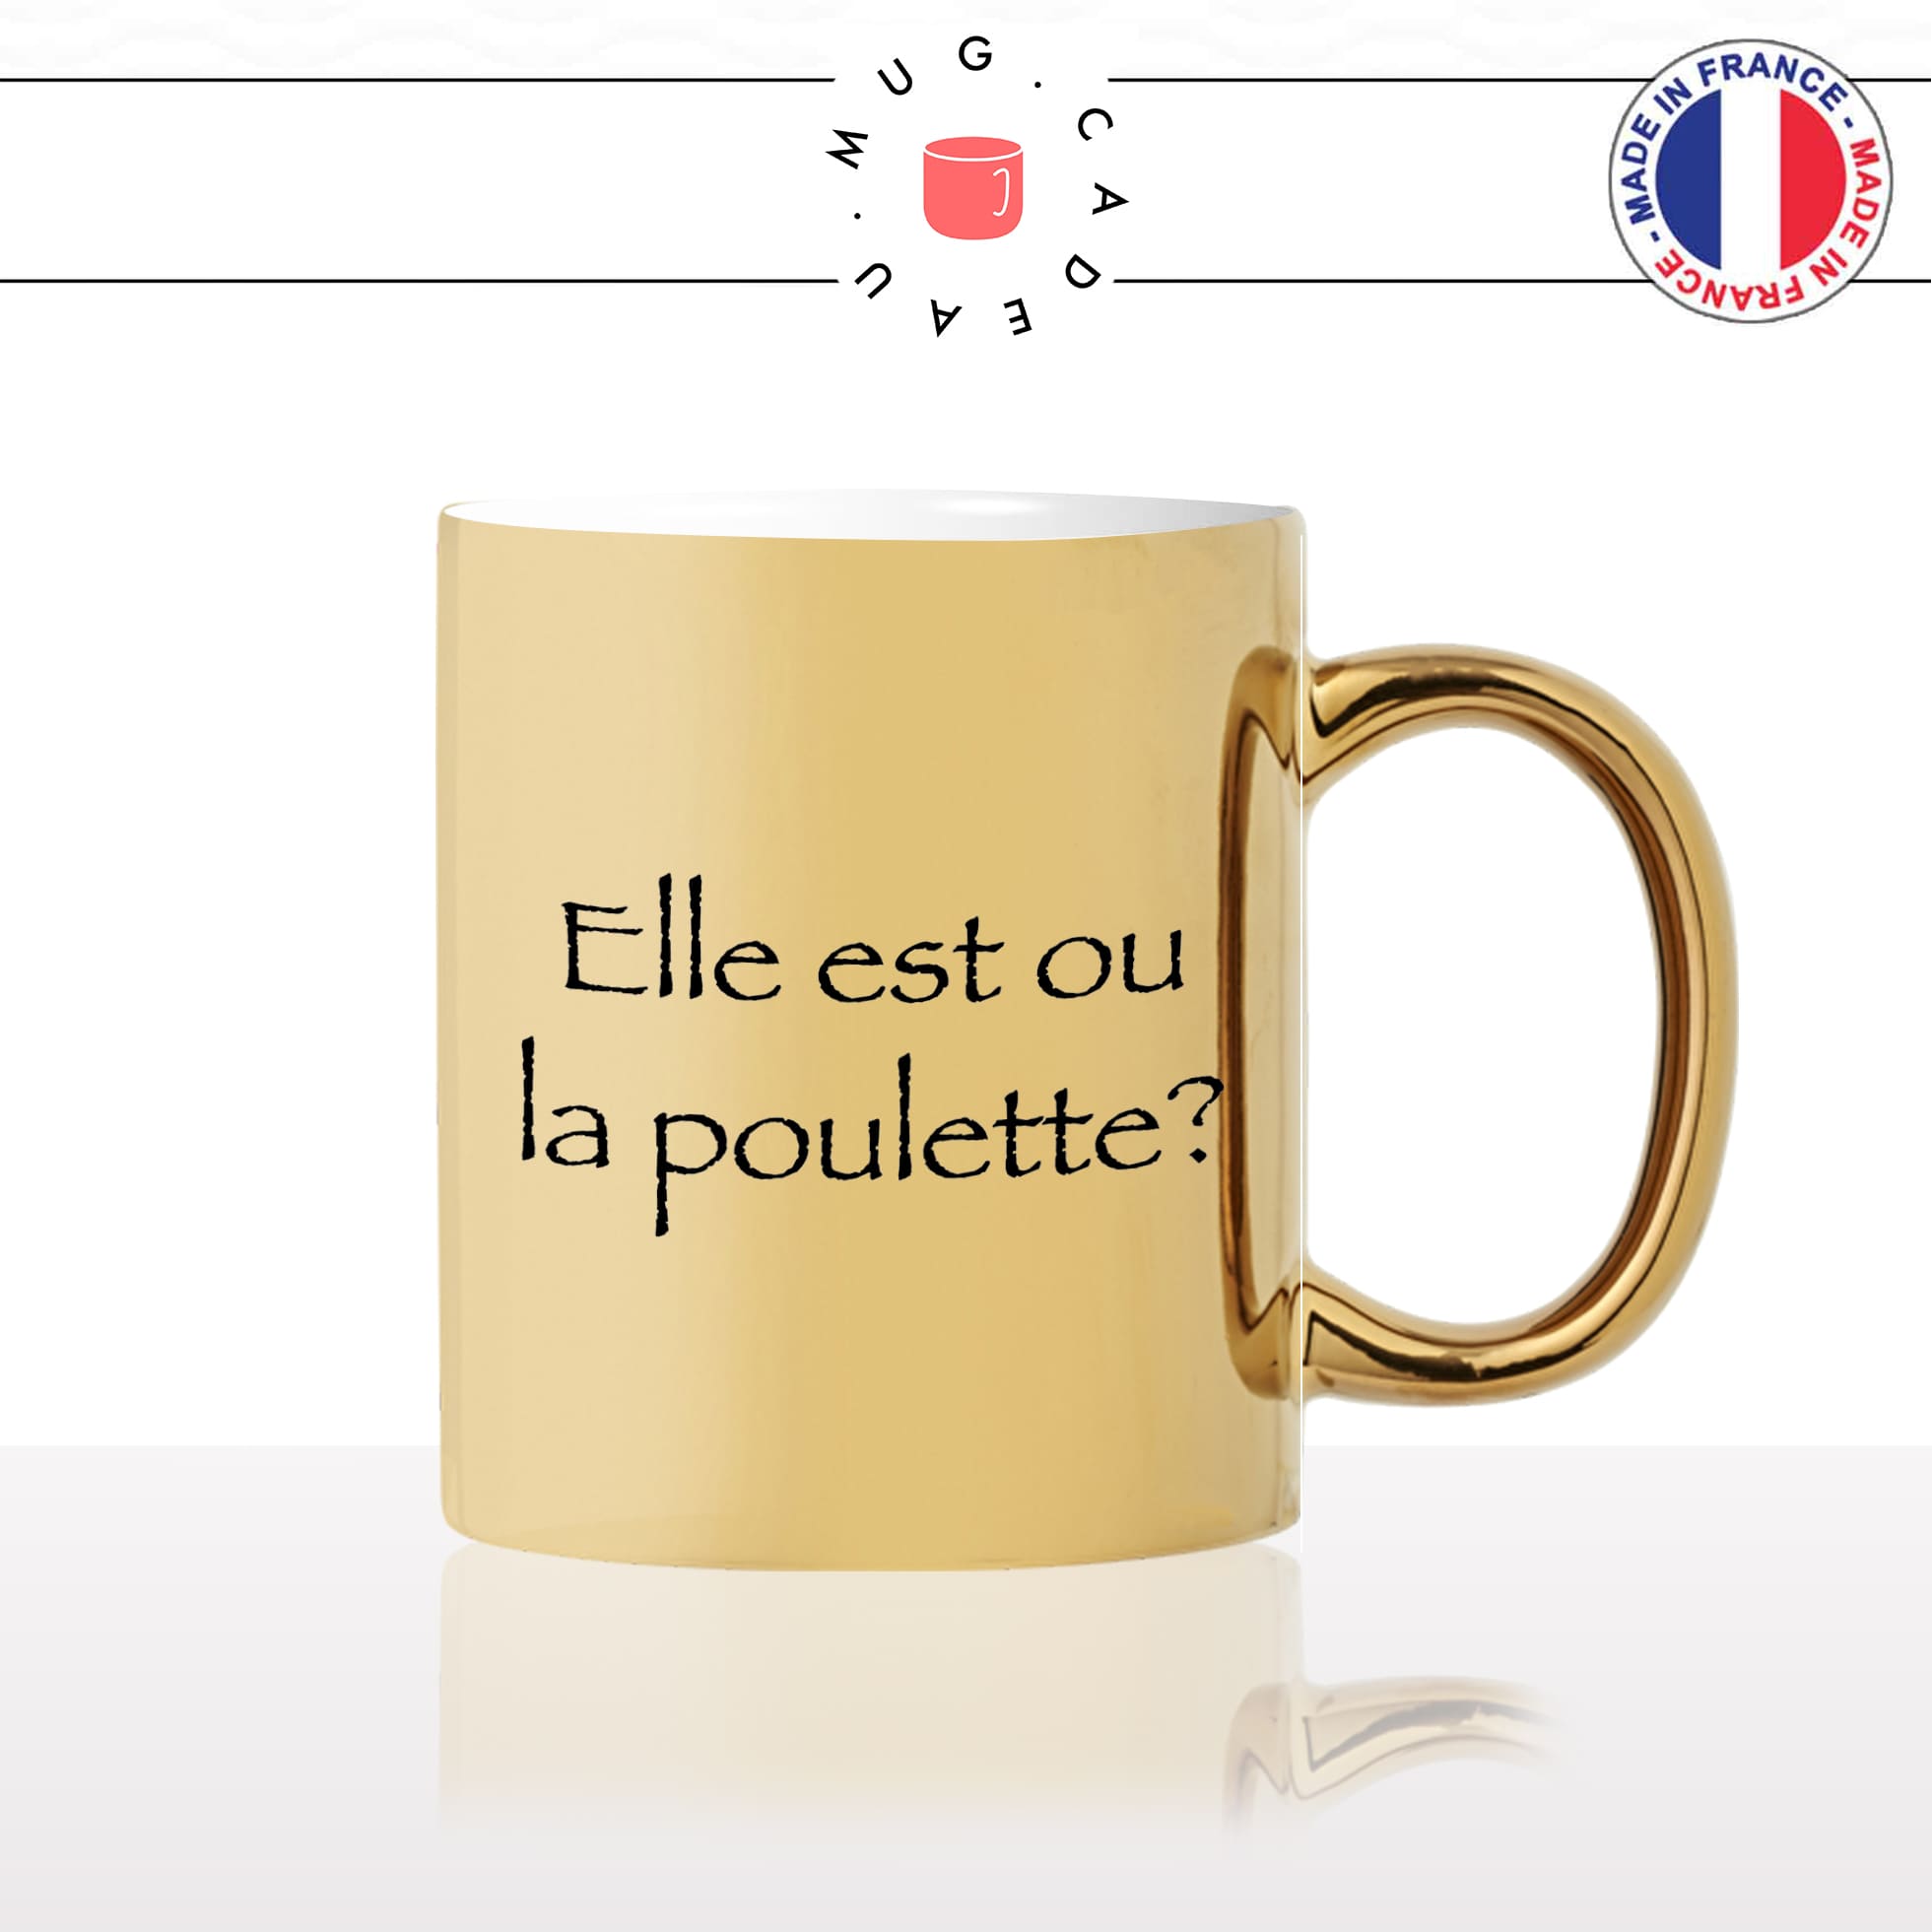 mug-tasse-doré-or-gold-kaamelott-arthur-elle-est-ou-la-poulette-citation-culte-série-francaise-humour-fun-idée-cadeau-personnalisé-café-thé2